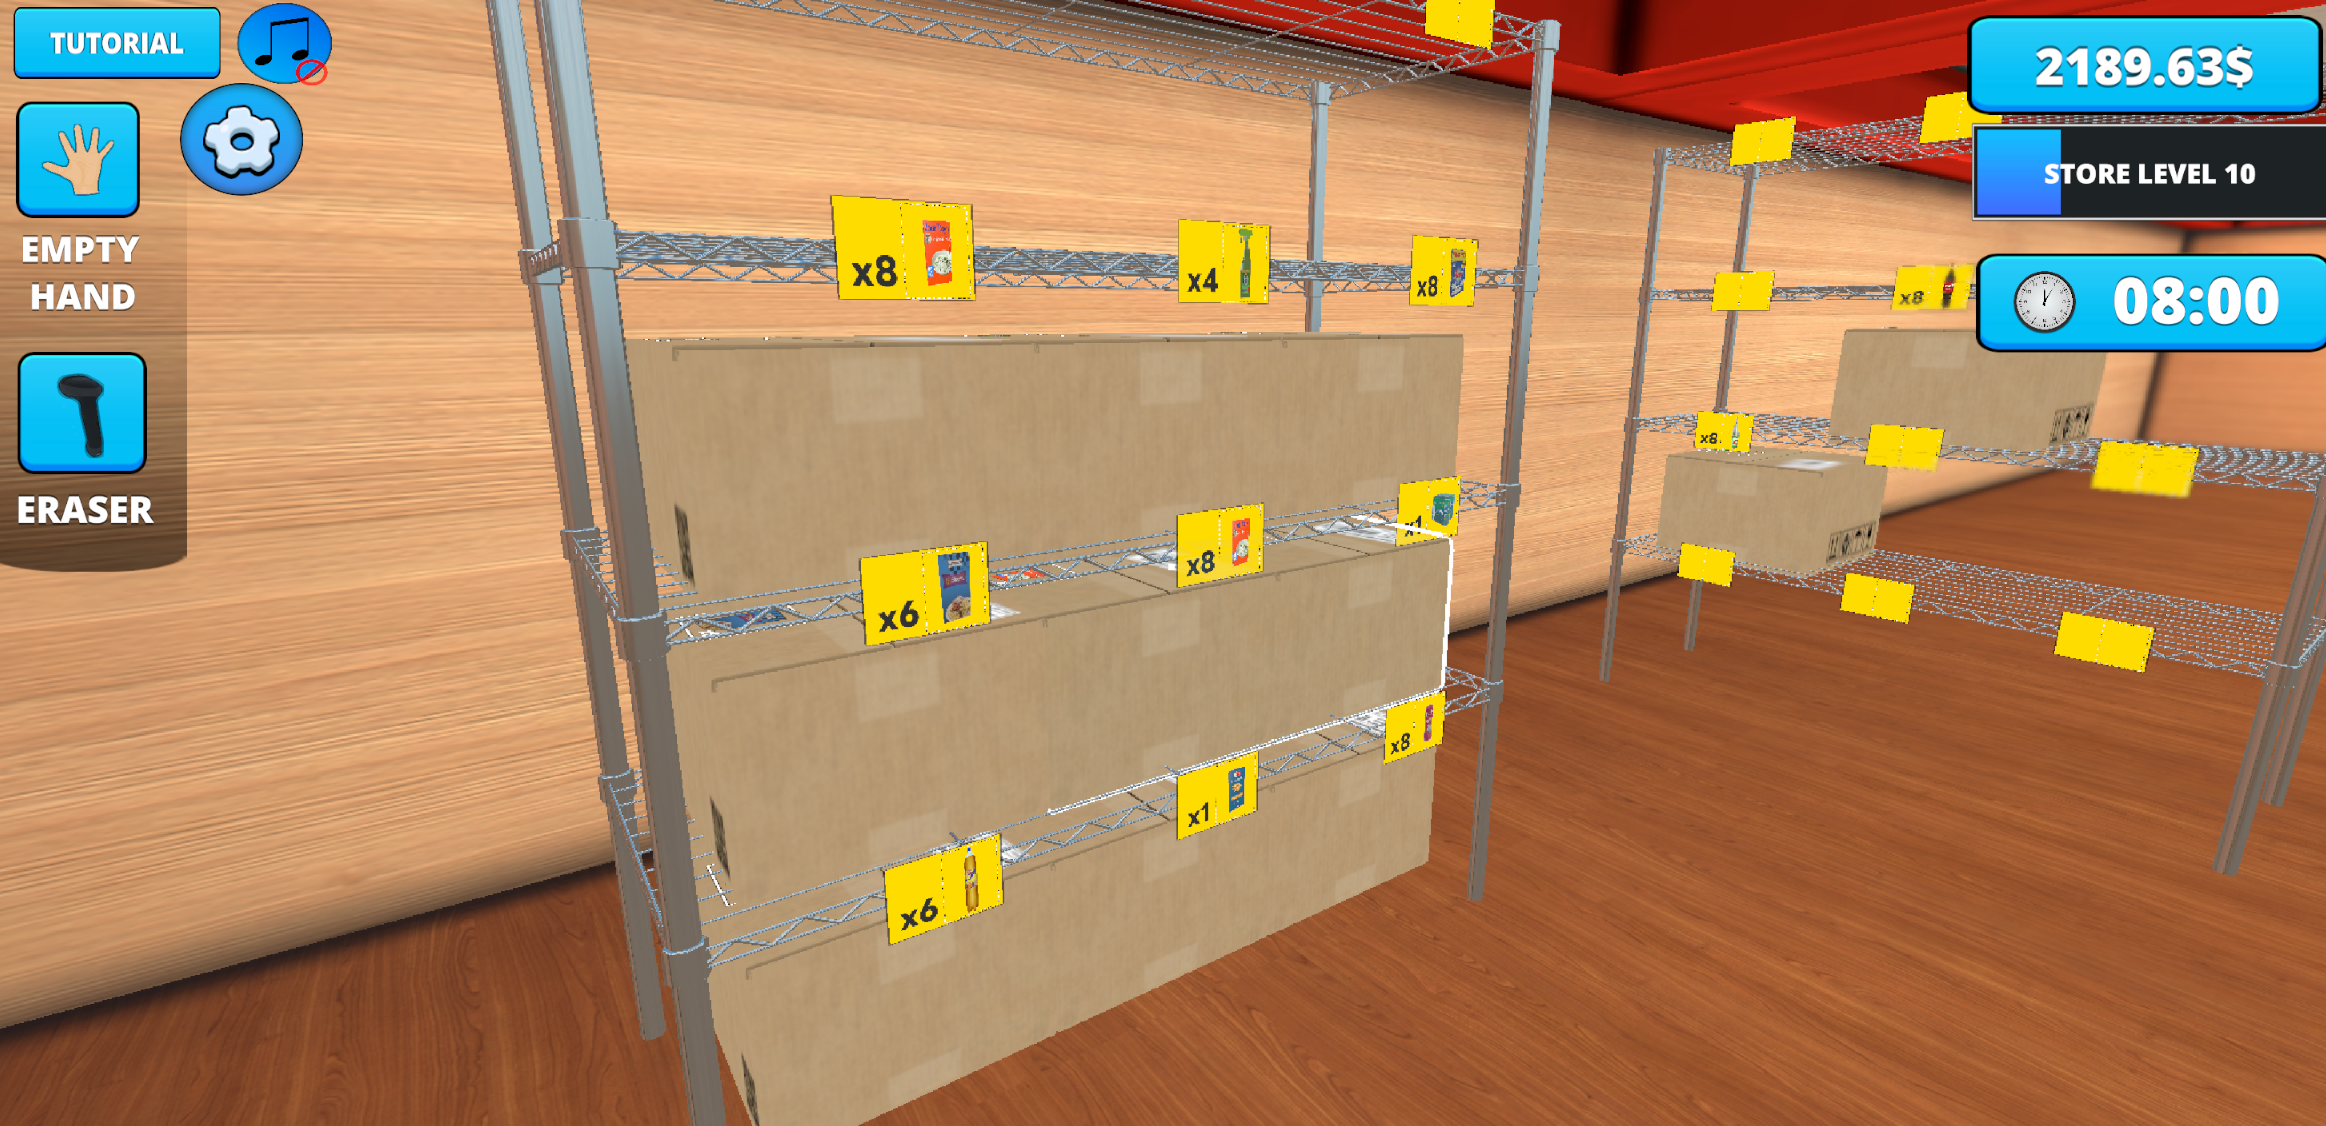 Retail Store Simulator screenshot game